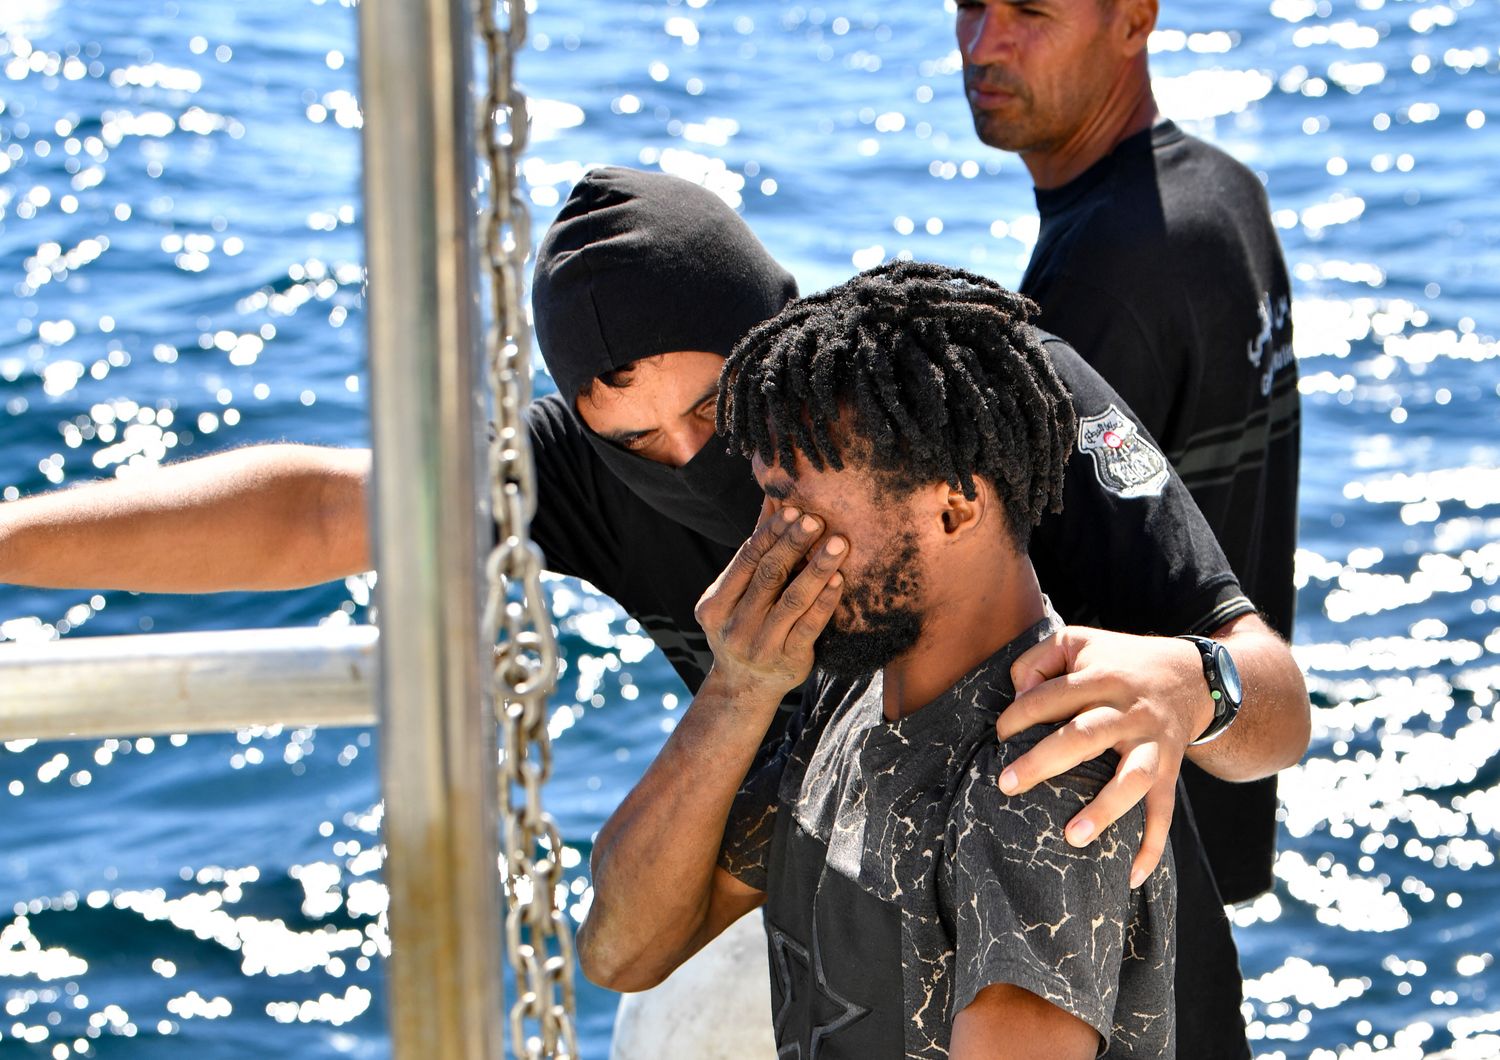 Un migrante soccorso dalla Guardia Costiera tunisina